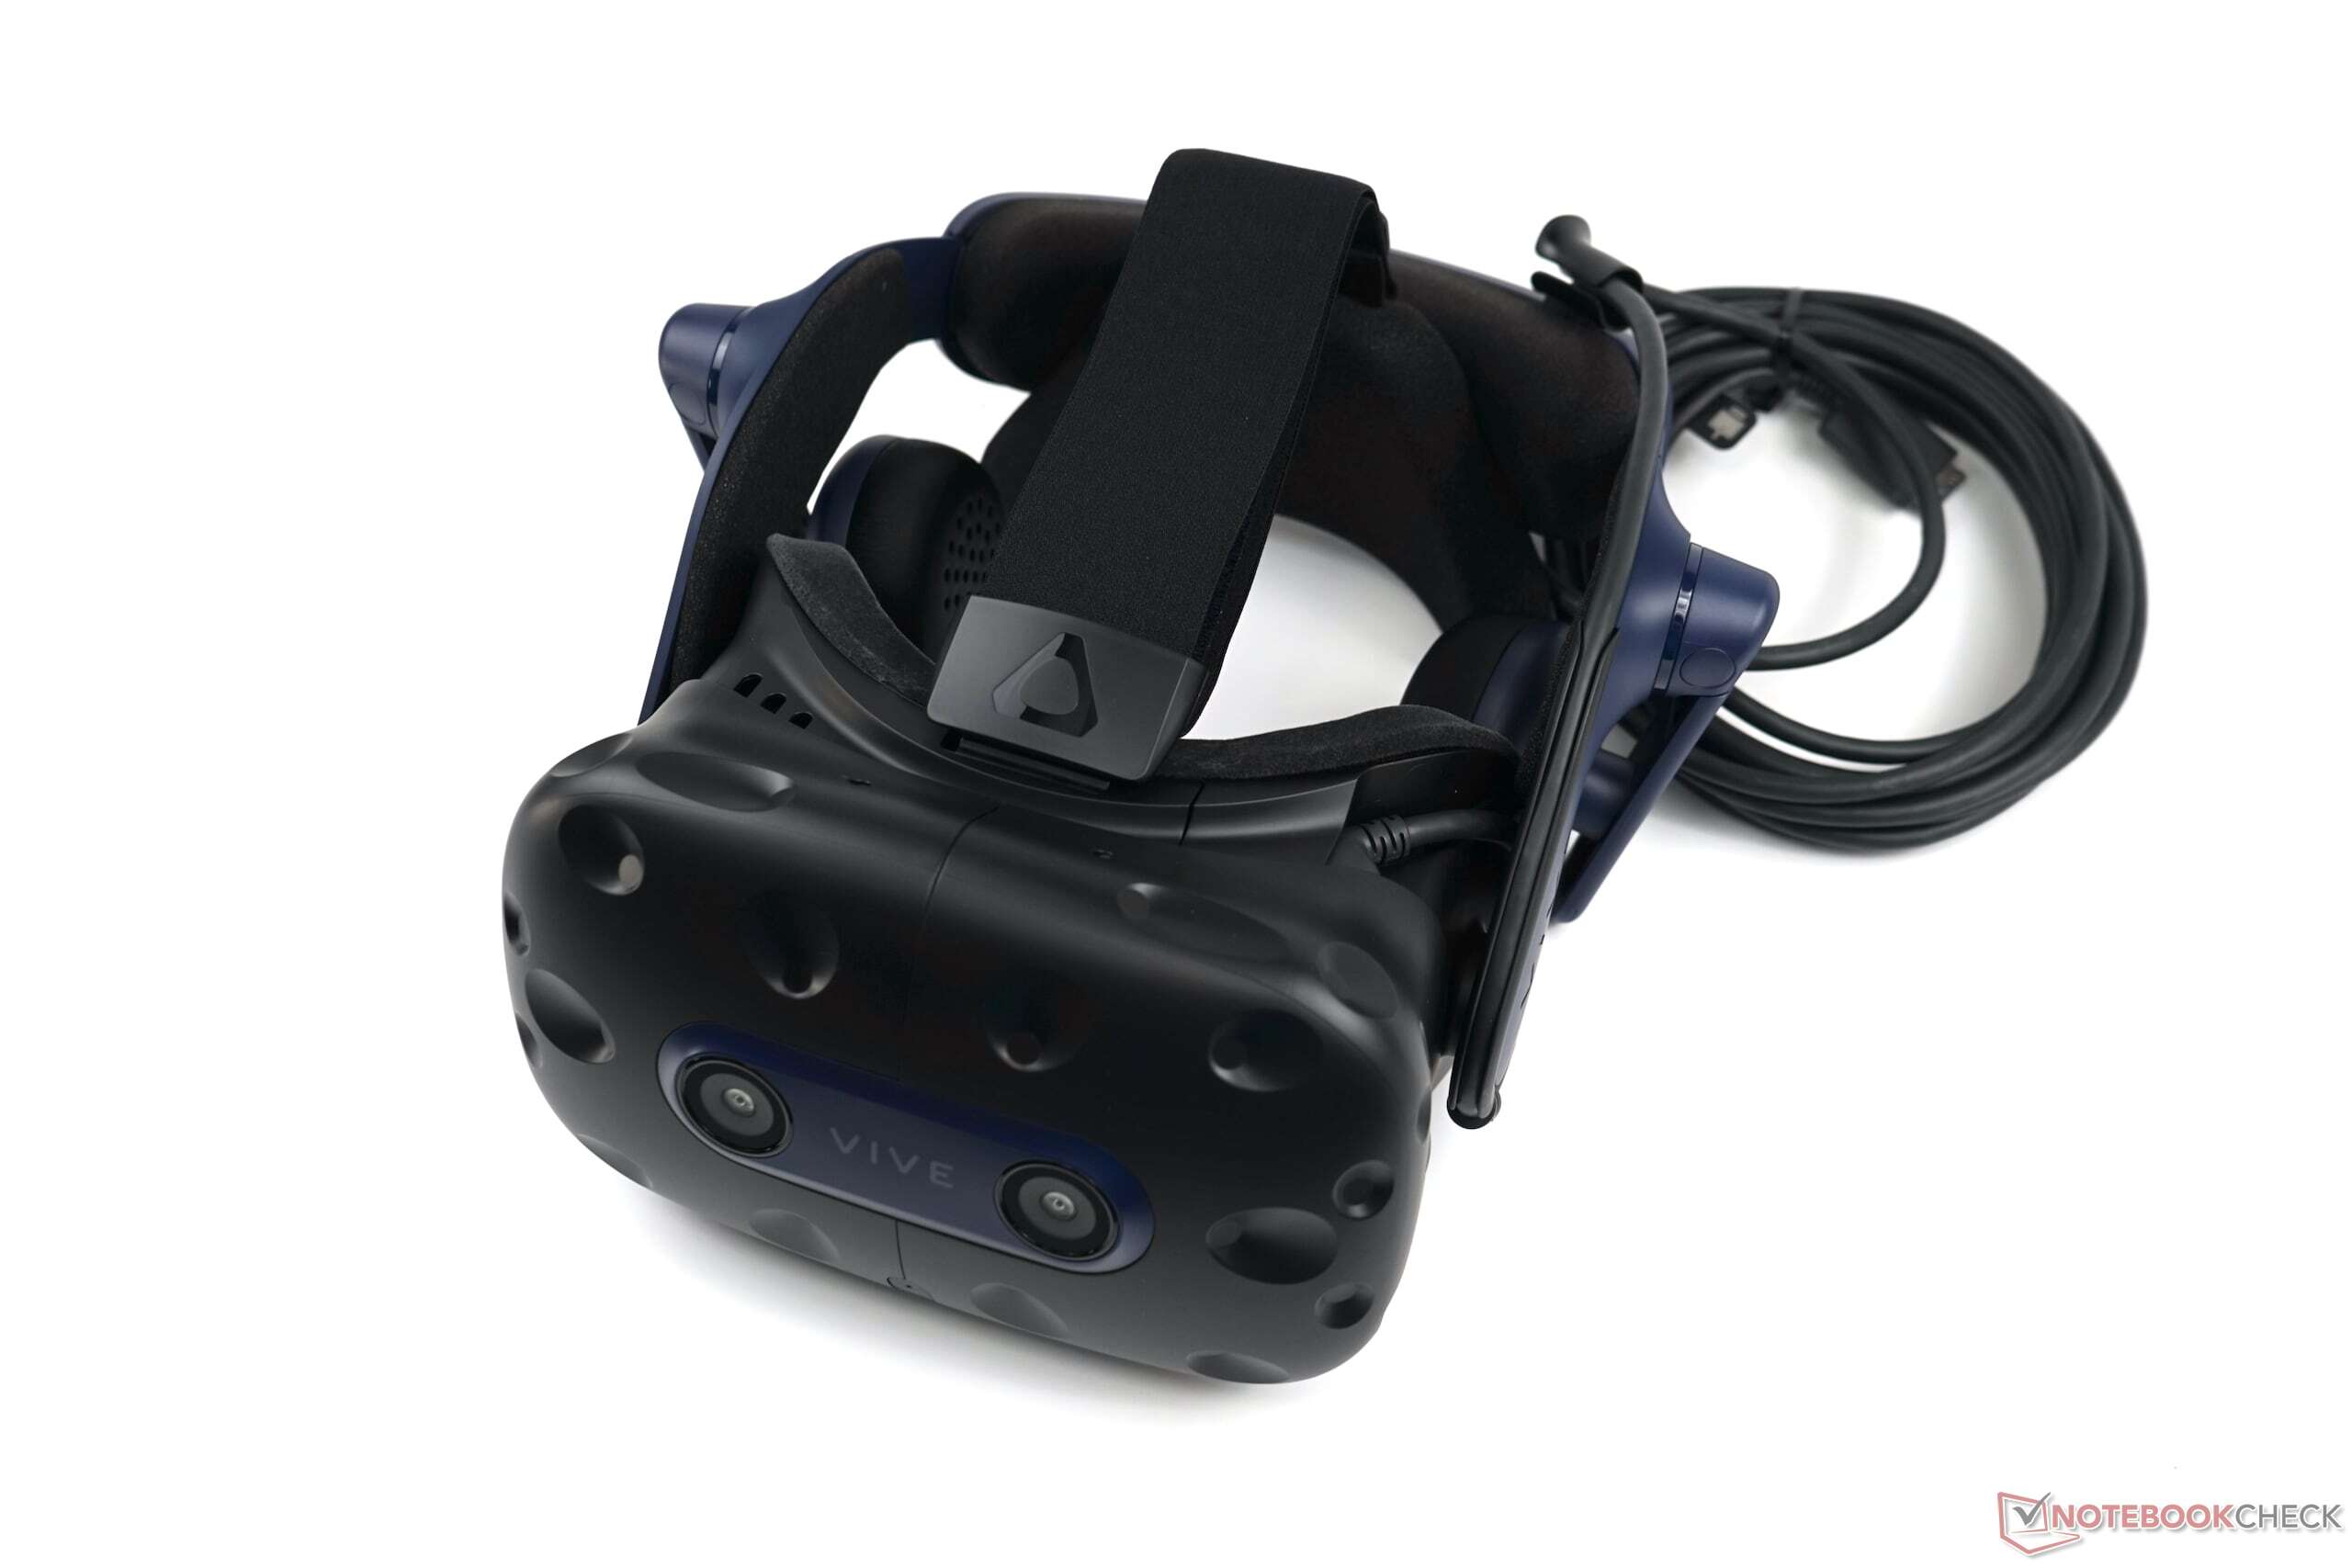 Examen du HTC Vive Pro 2 : L'expérience VR ultime